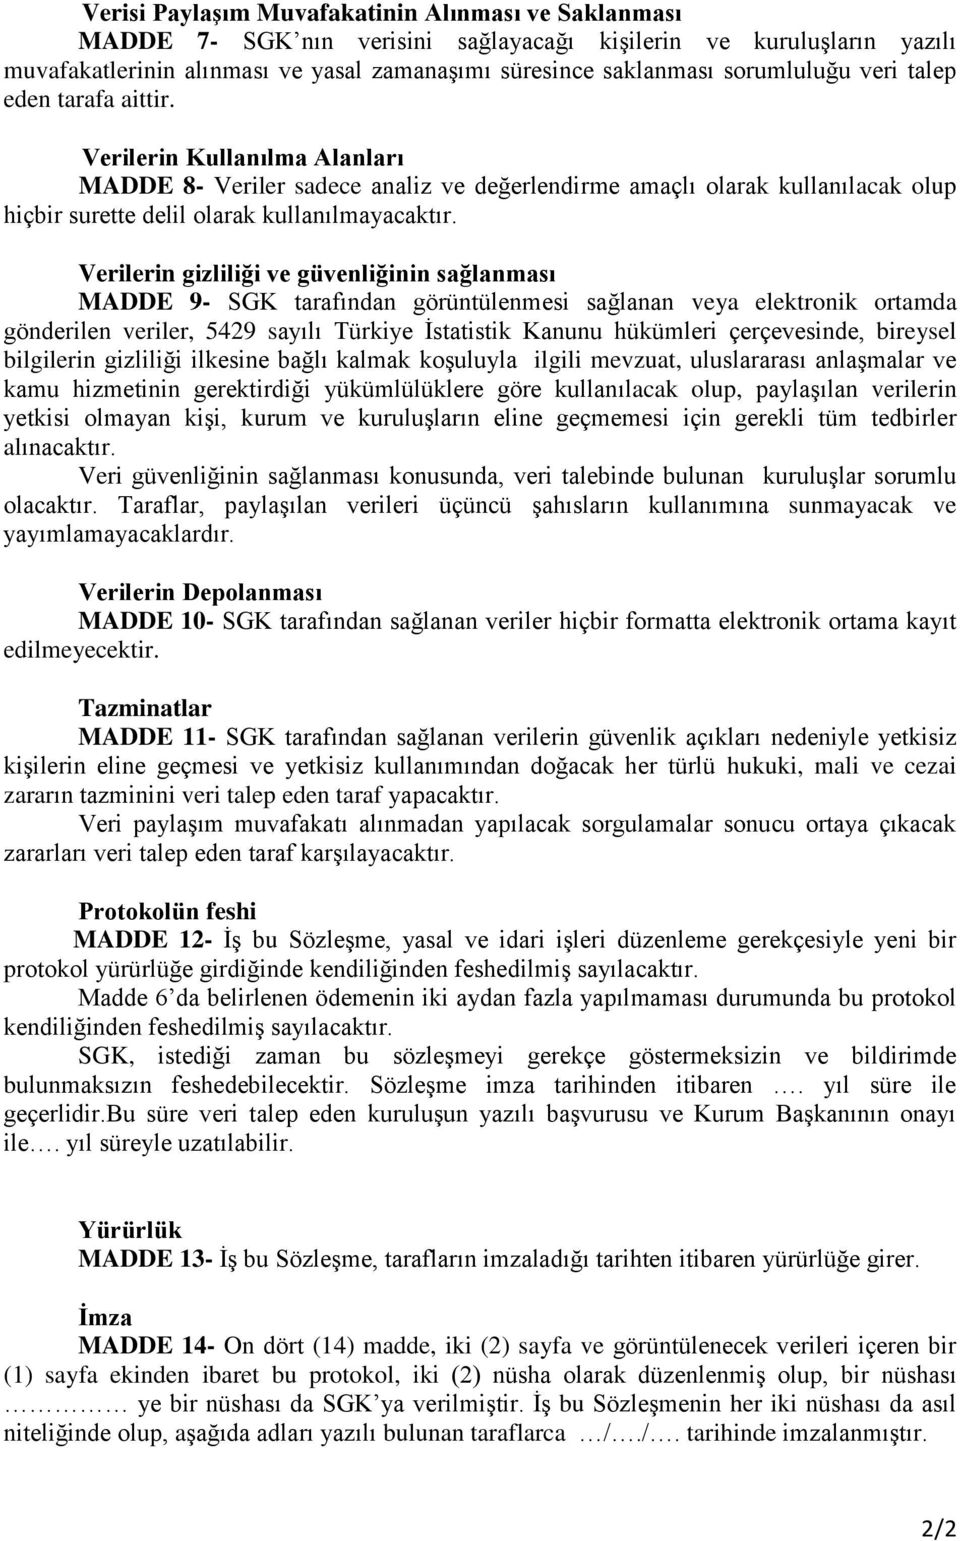 Verilerin gizliliği ve güvenliğinin sağlanması MADDE 9- SGK tarafından görüntülenmesi sağlanan veya elektronik ortamda gönderilen veriler, 5429 sayılı Türkiye İstatistik Kanunu hükümleri